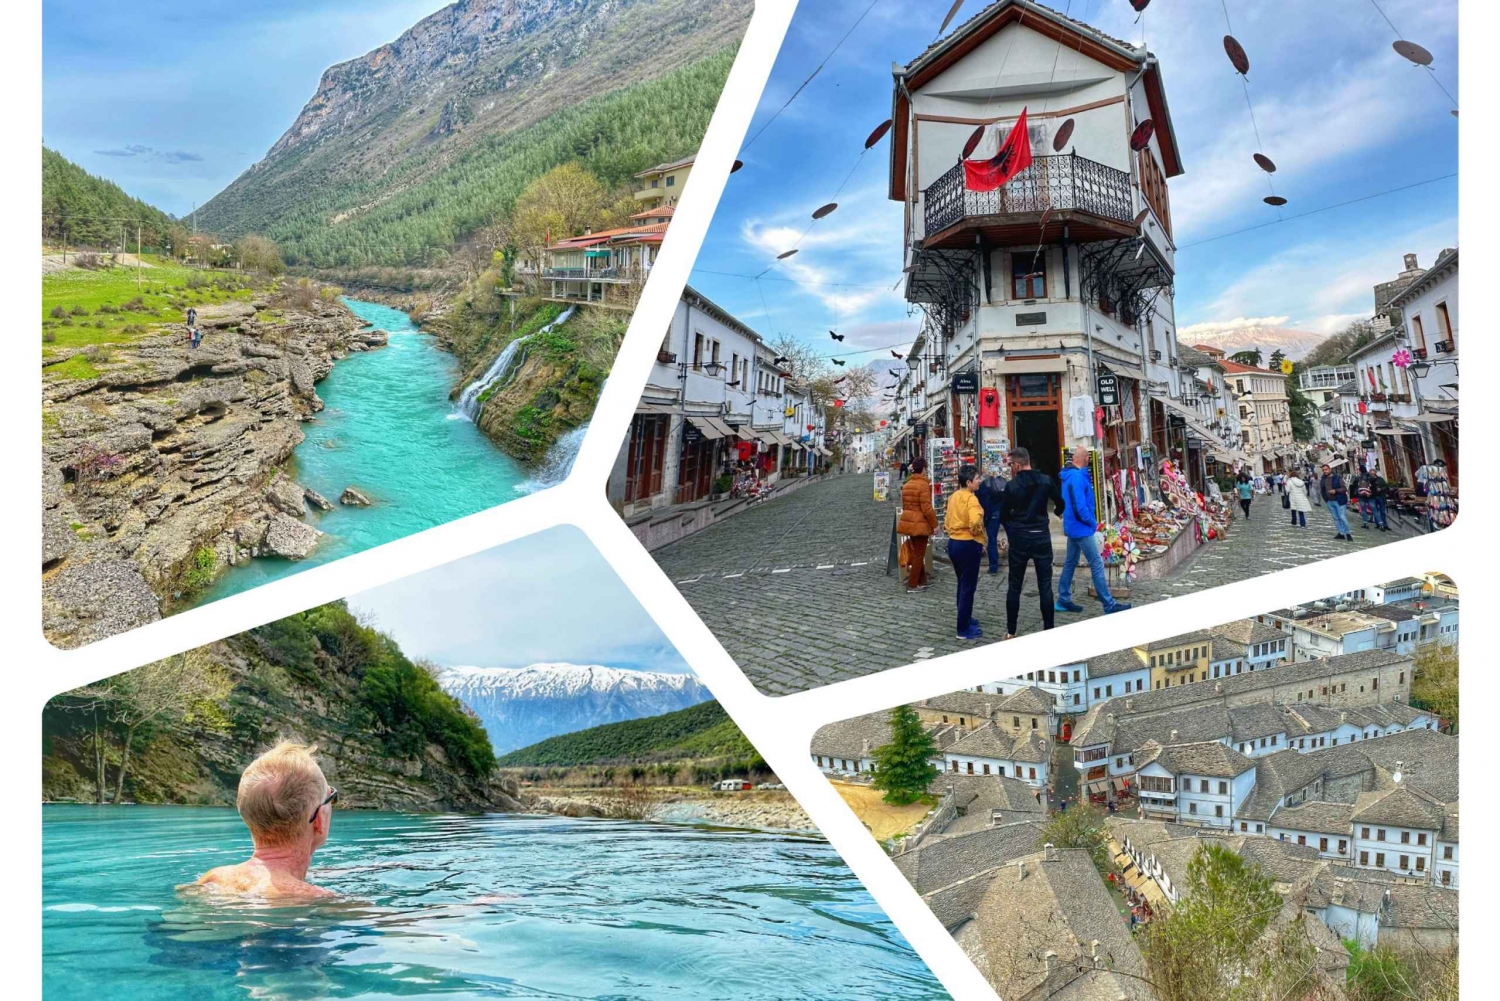 From Tirana: Visit Gjirokastra & enjoy hot springs in Permet